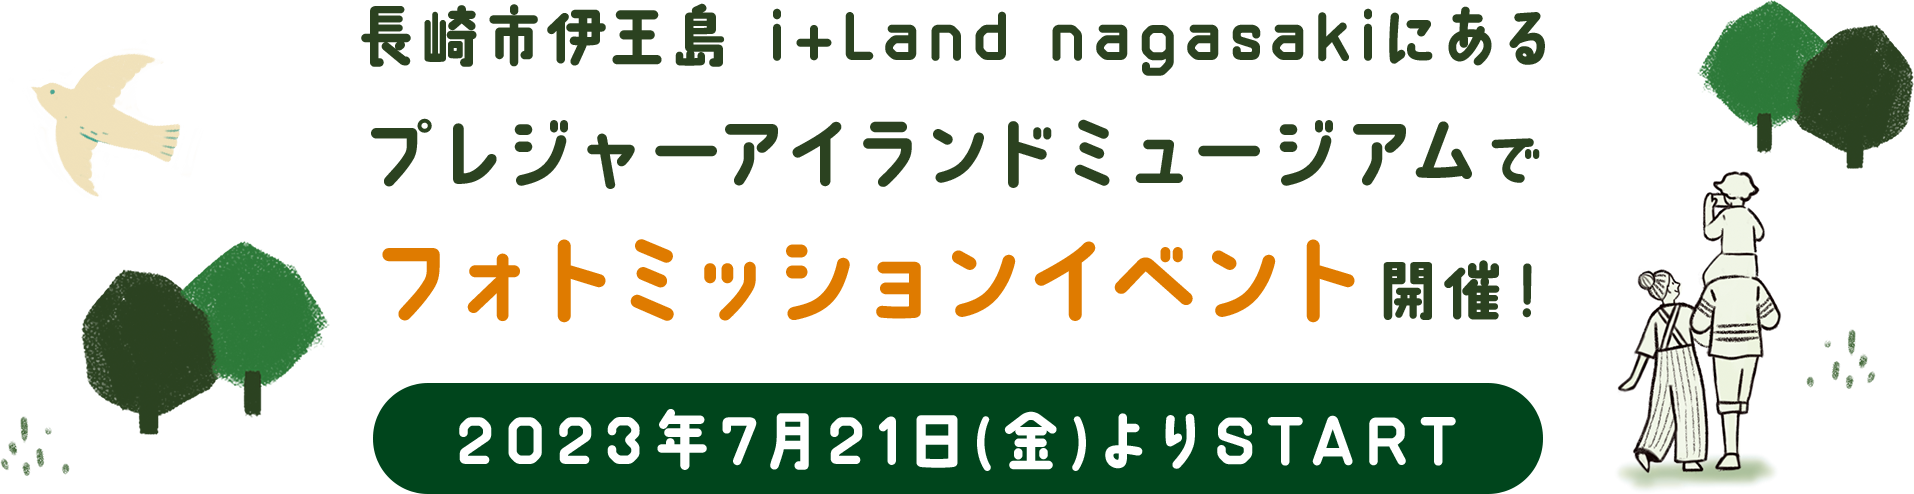 長崎市伊王島i+Land nagasakiにあるプレジャーアイランドミュージアムで初の謎解き宝探しイベント開催 2023年7月21日(金)よりSTART